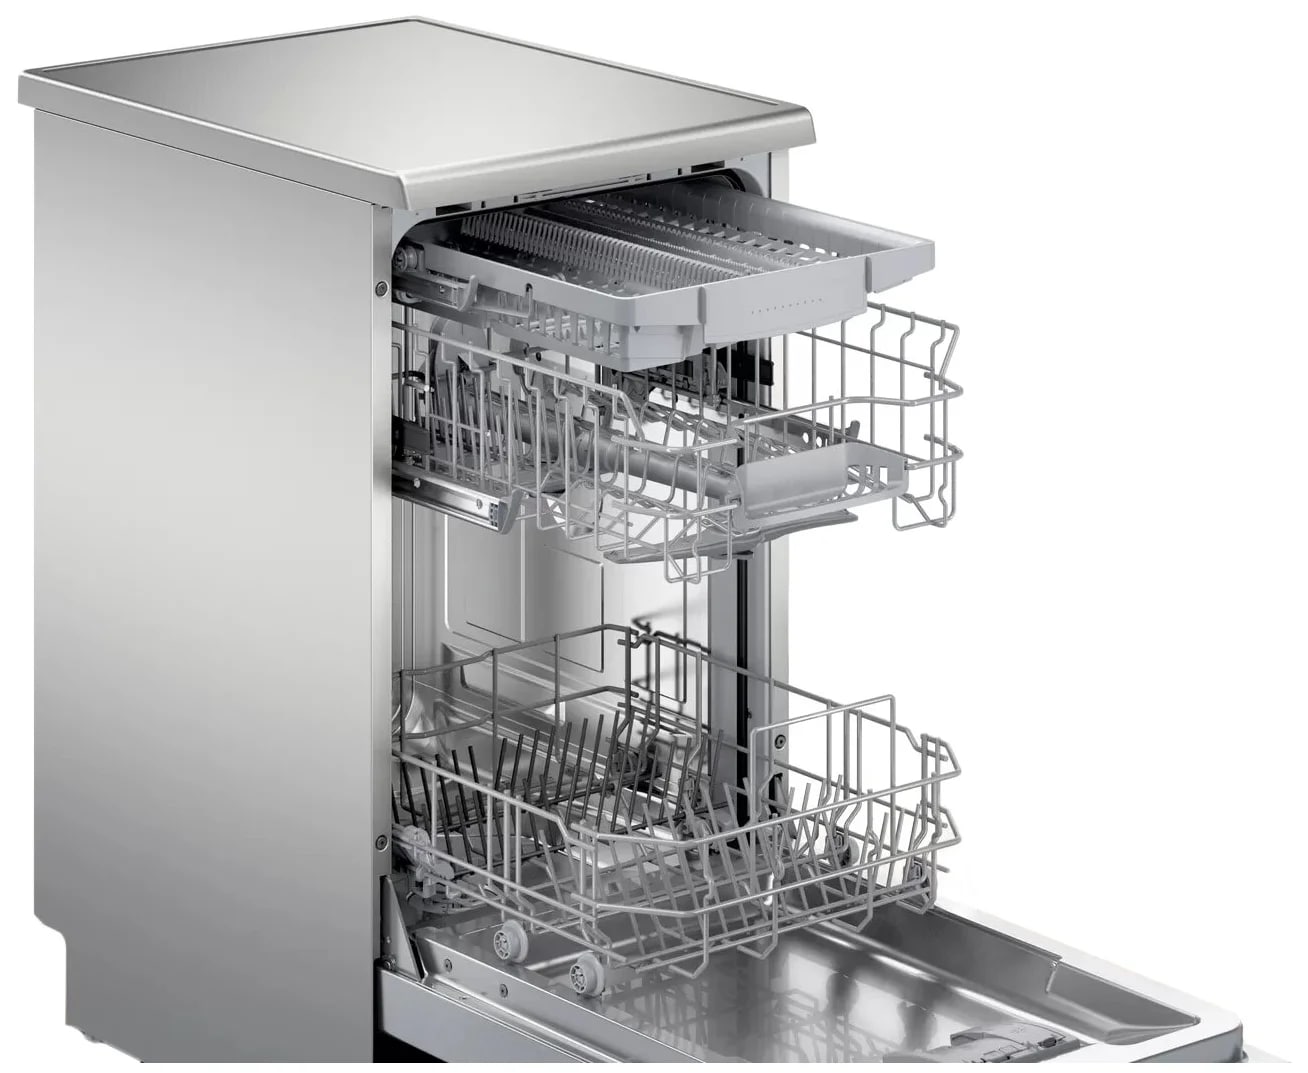 Посудомоечная машина 60 см купить в спб. Посудомоечная машина Bosch sps25cw03r. Посудомоечная машина Bosch SPS 25dw03 r. Bosch sps25cw01r. Bosch sps2hmw4fr.